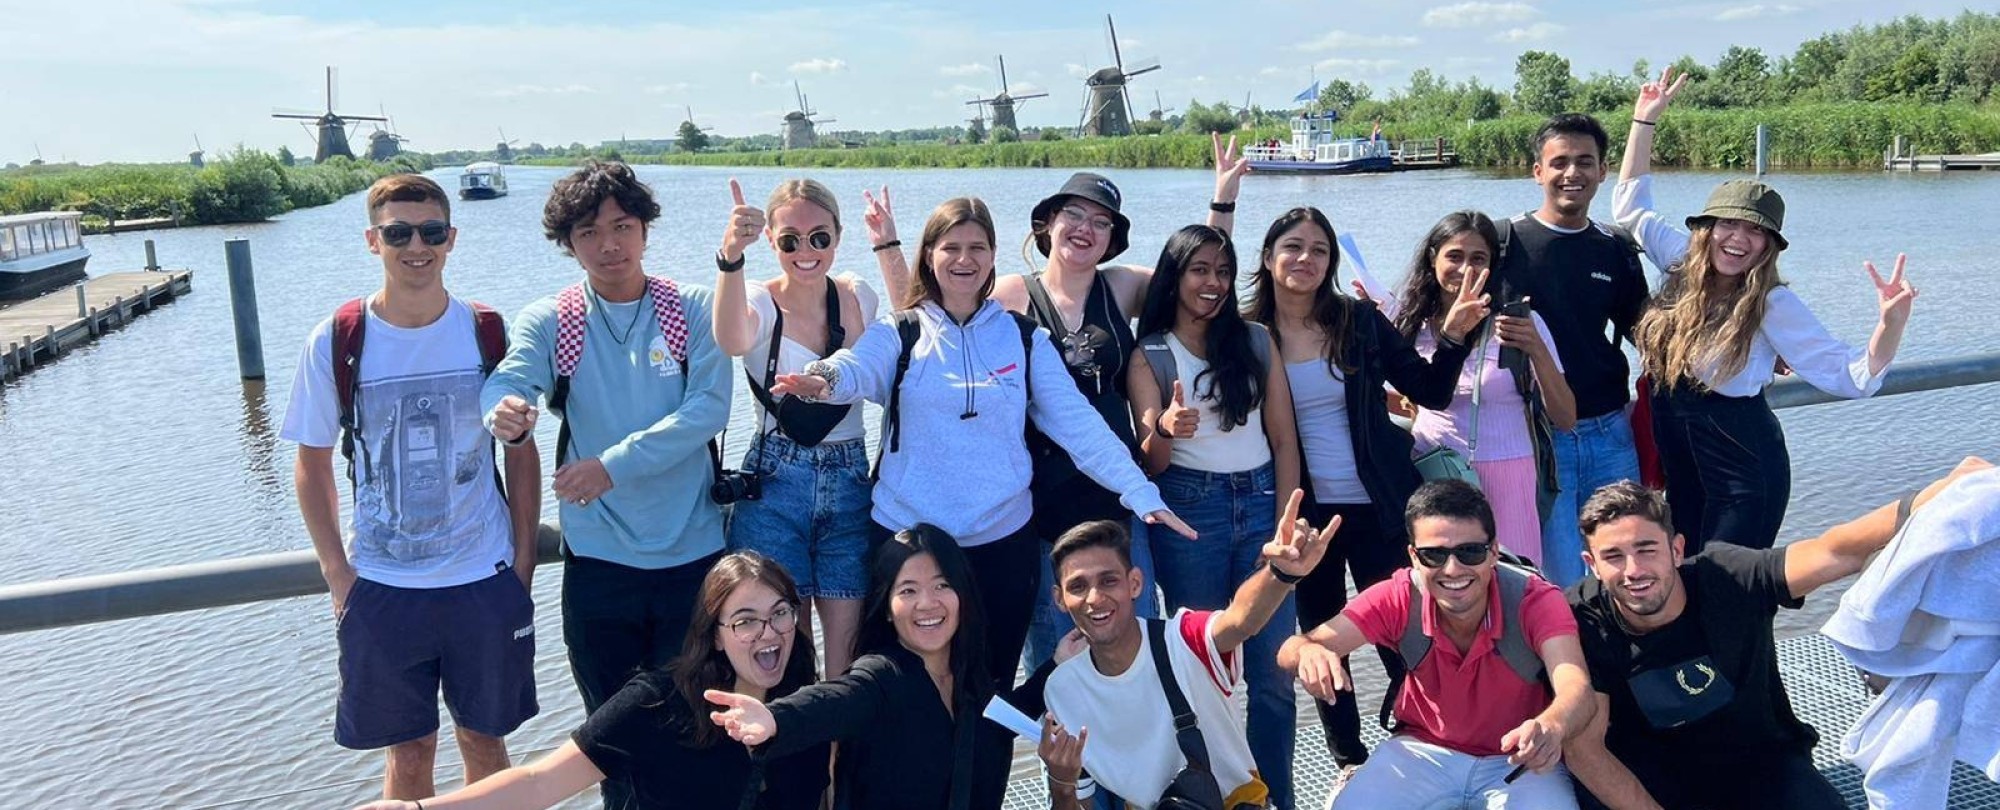 Bezoek Kinderdijk met summer school studenten